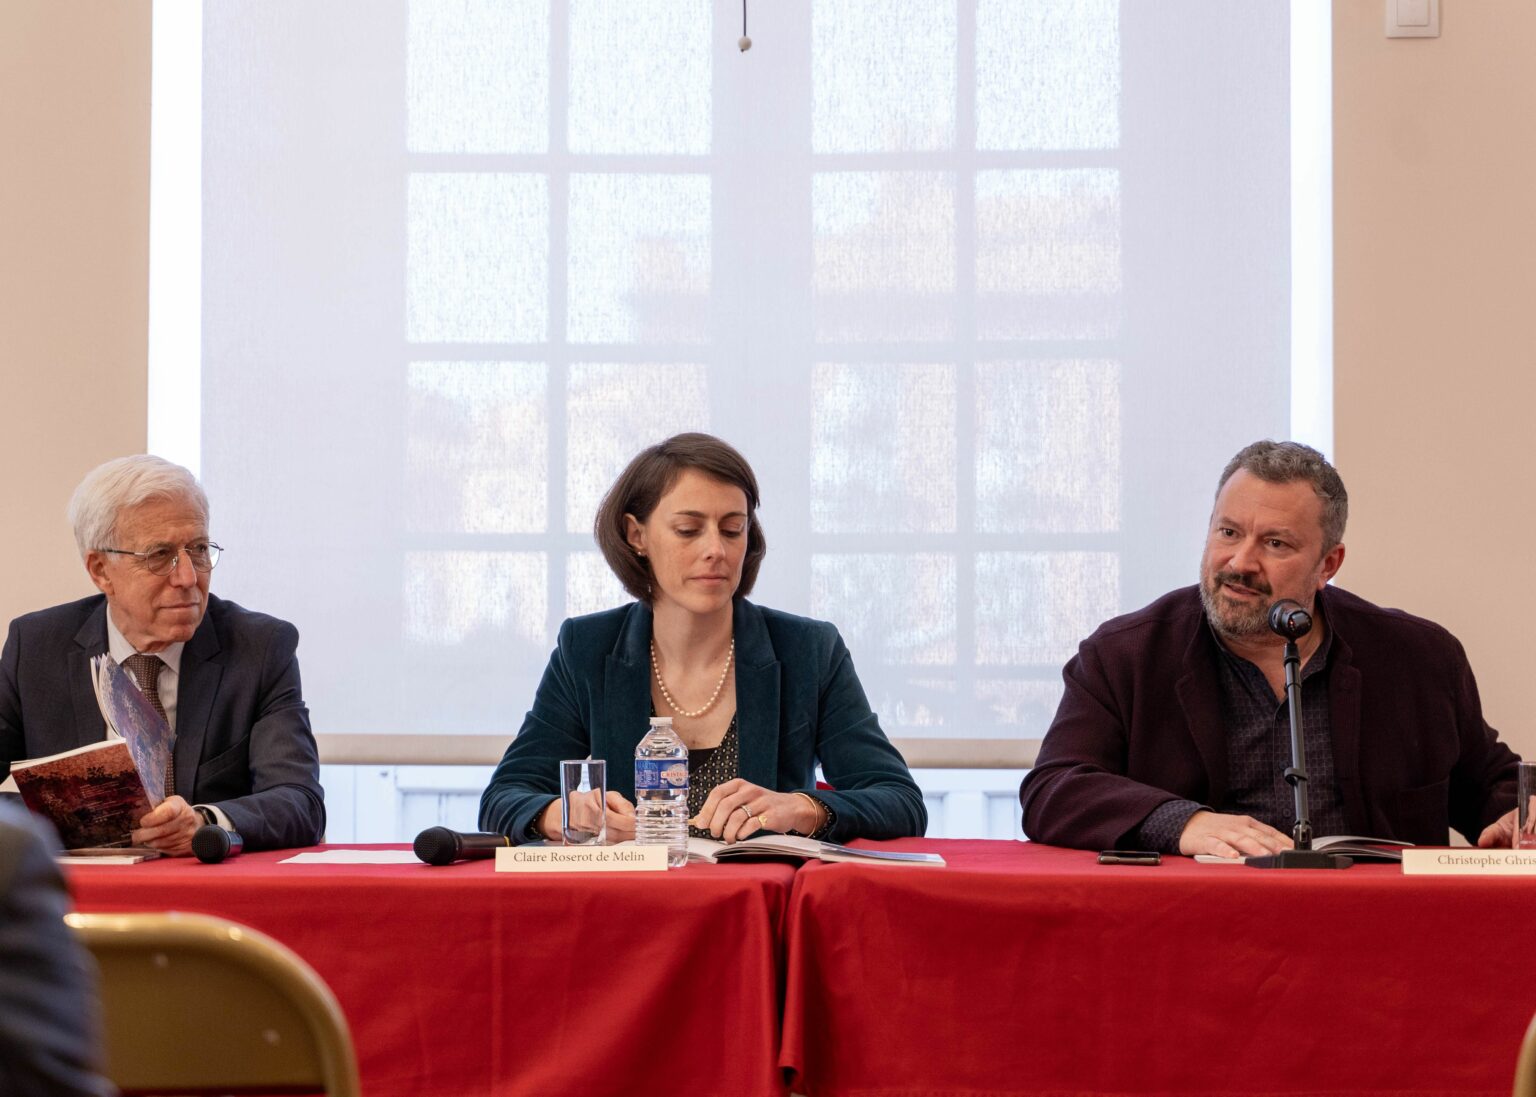 Francis Grass, Claire Roserot de Melin et Christophe Ghristi